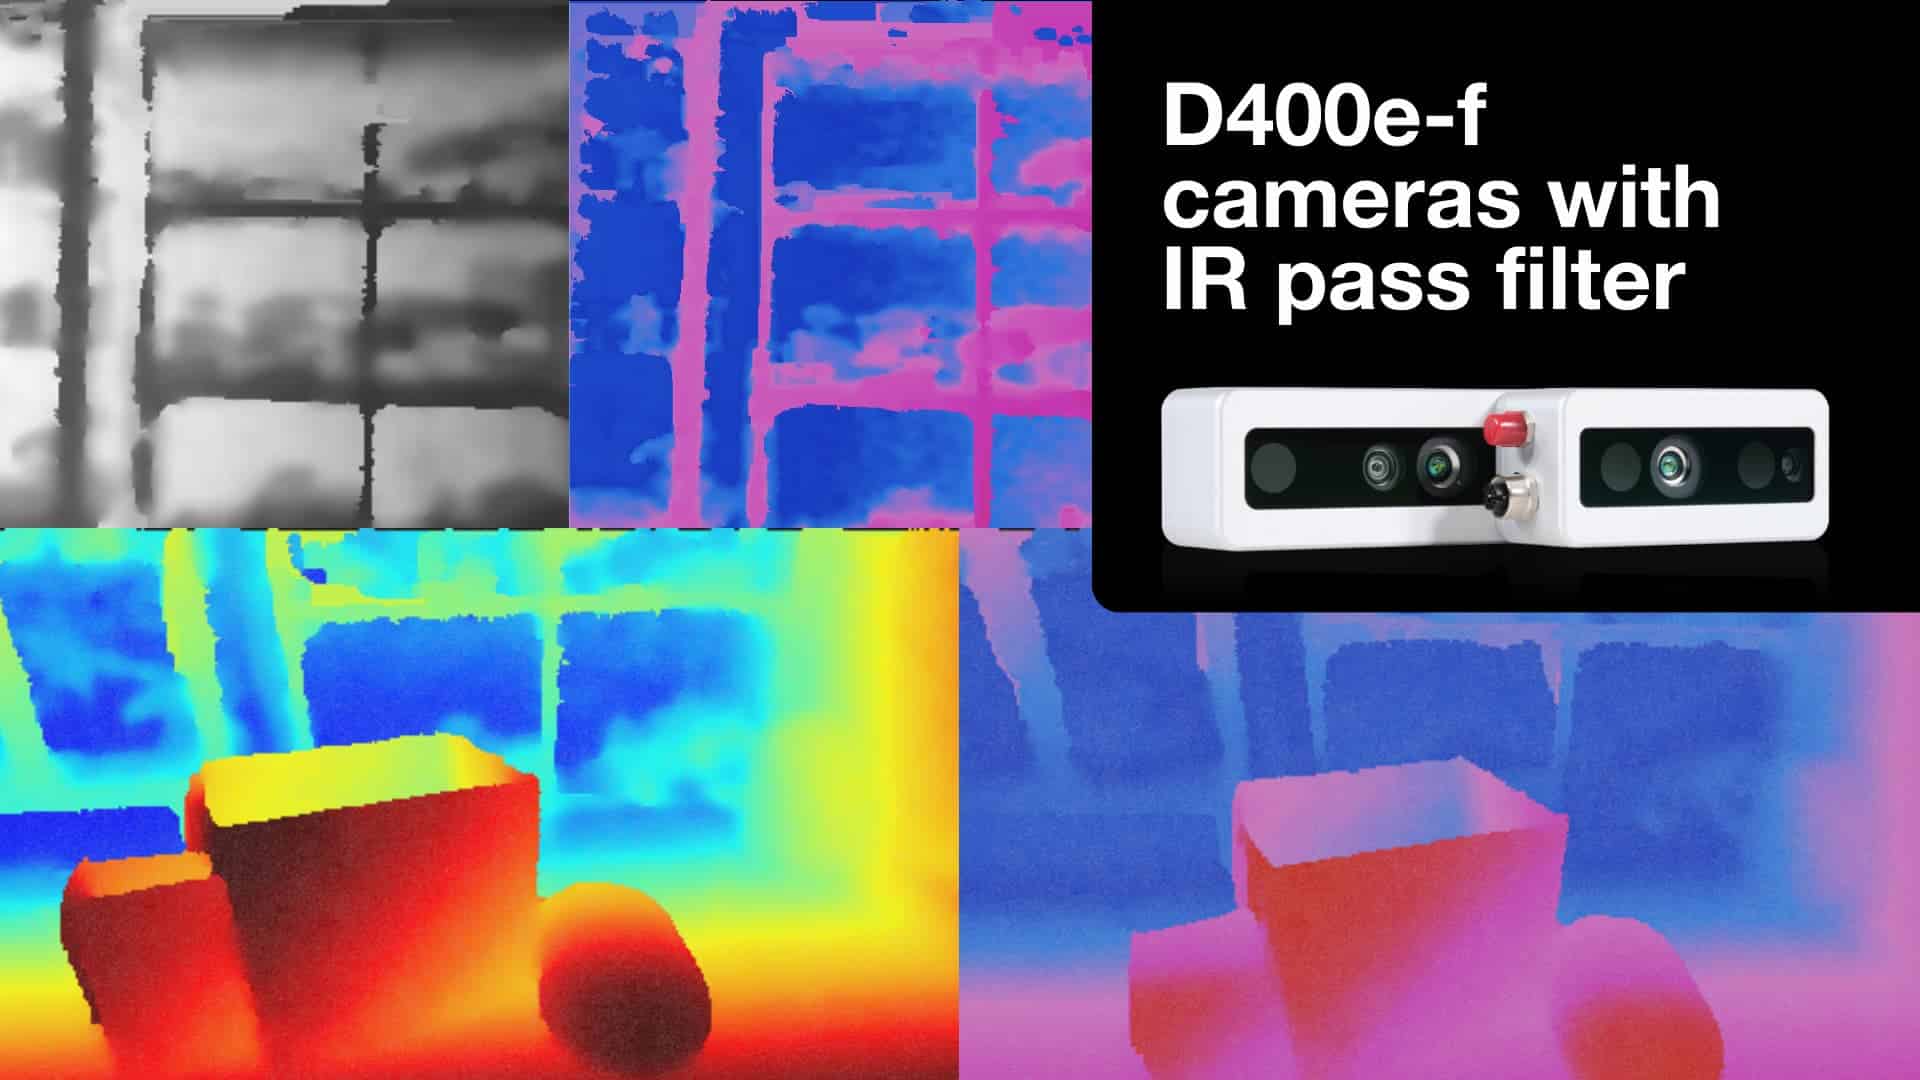 FRAMOS Adds IR Pass Filter to D400e-f Stereo Depth Camera Series 